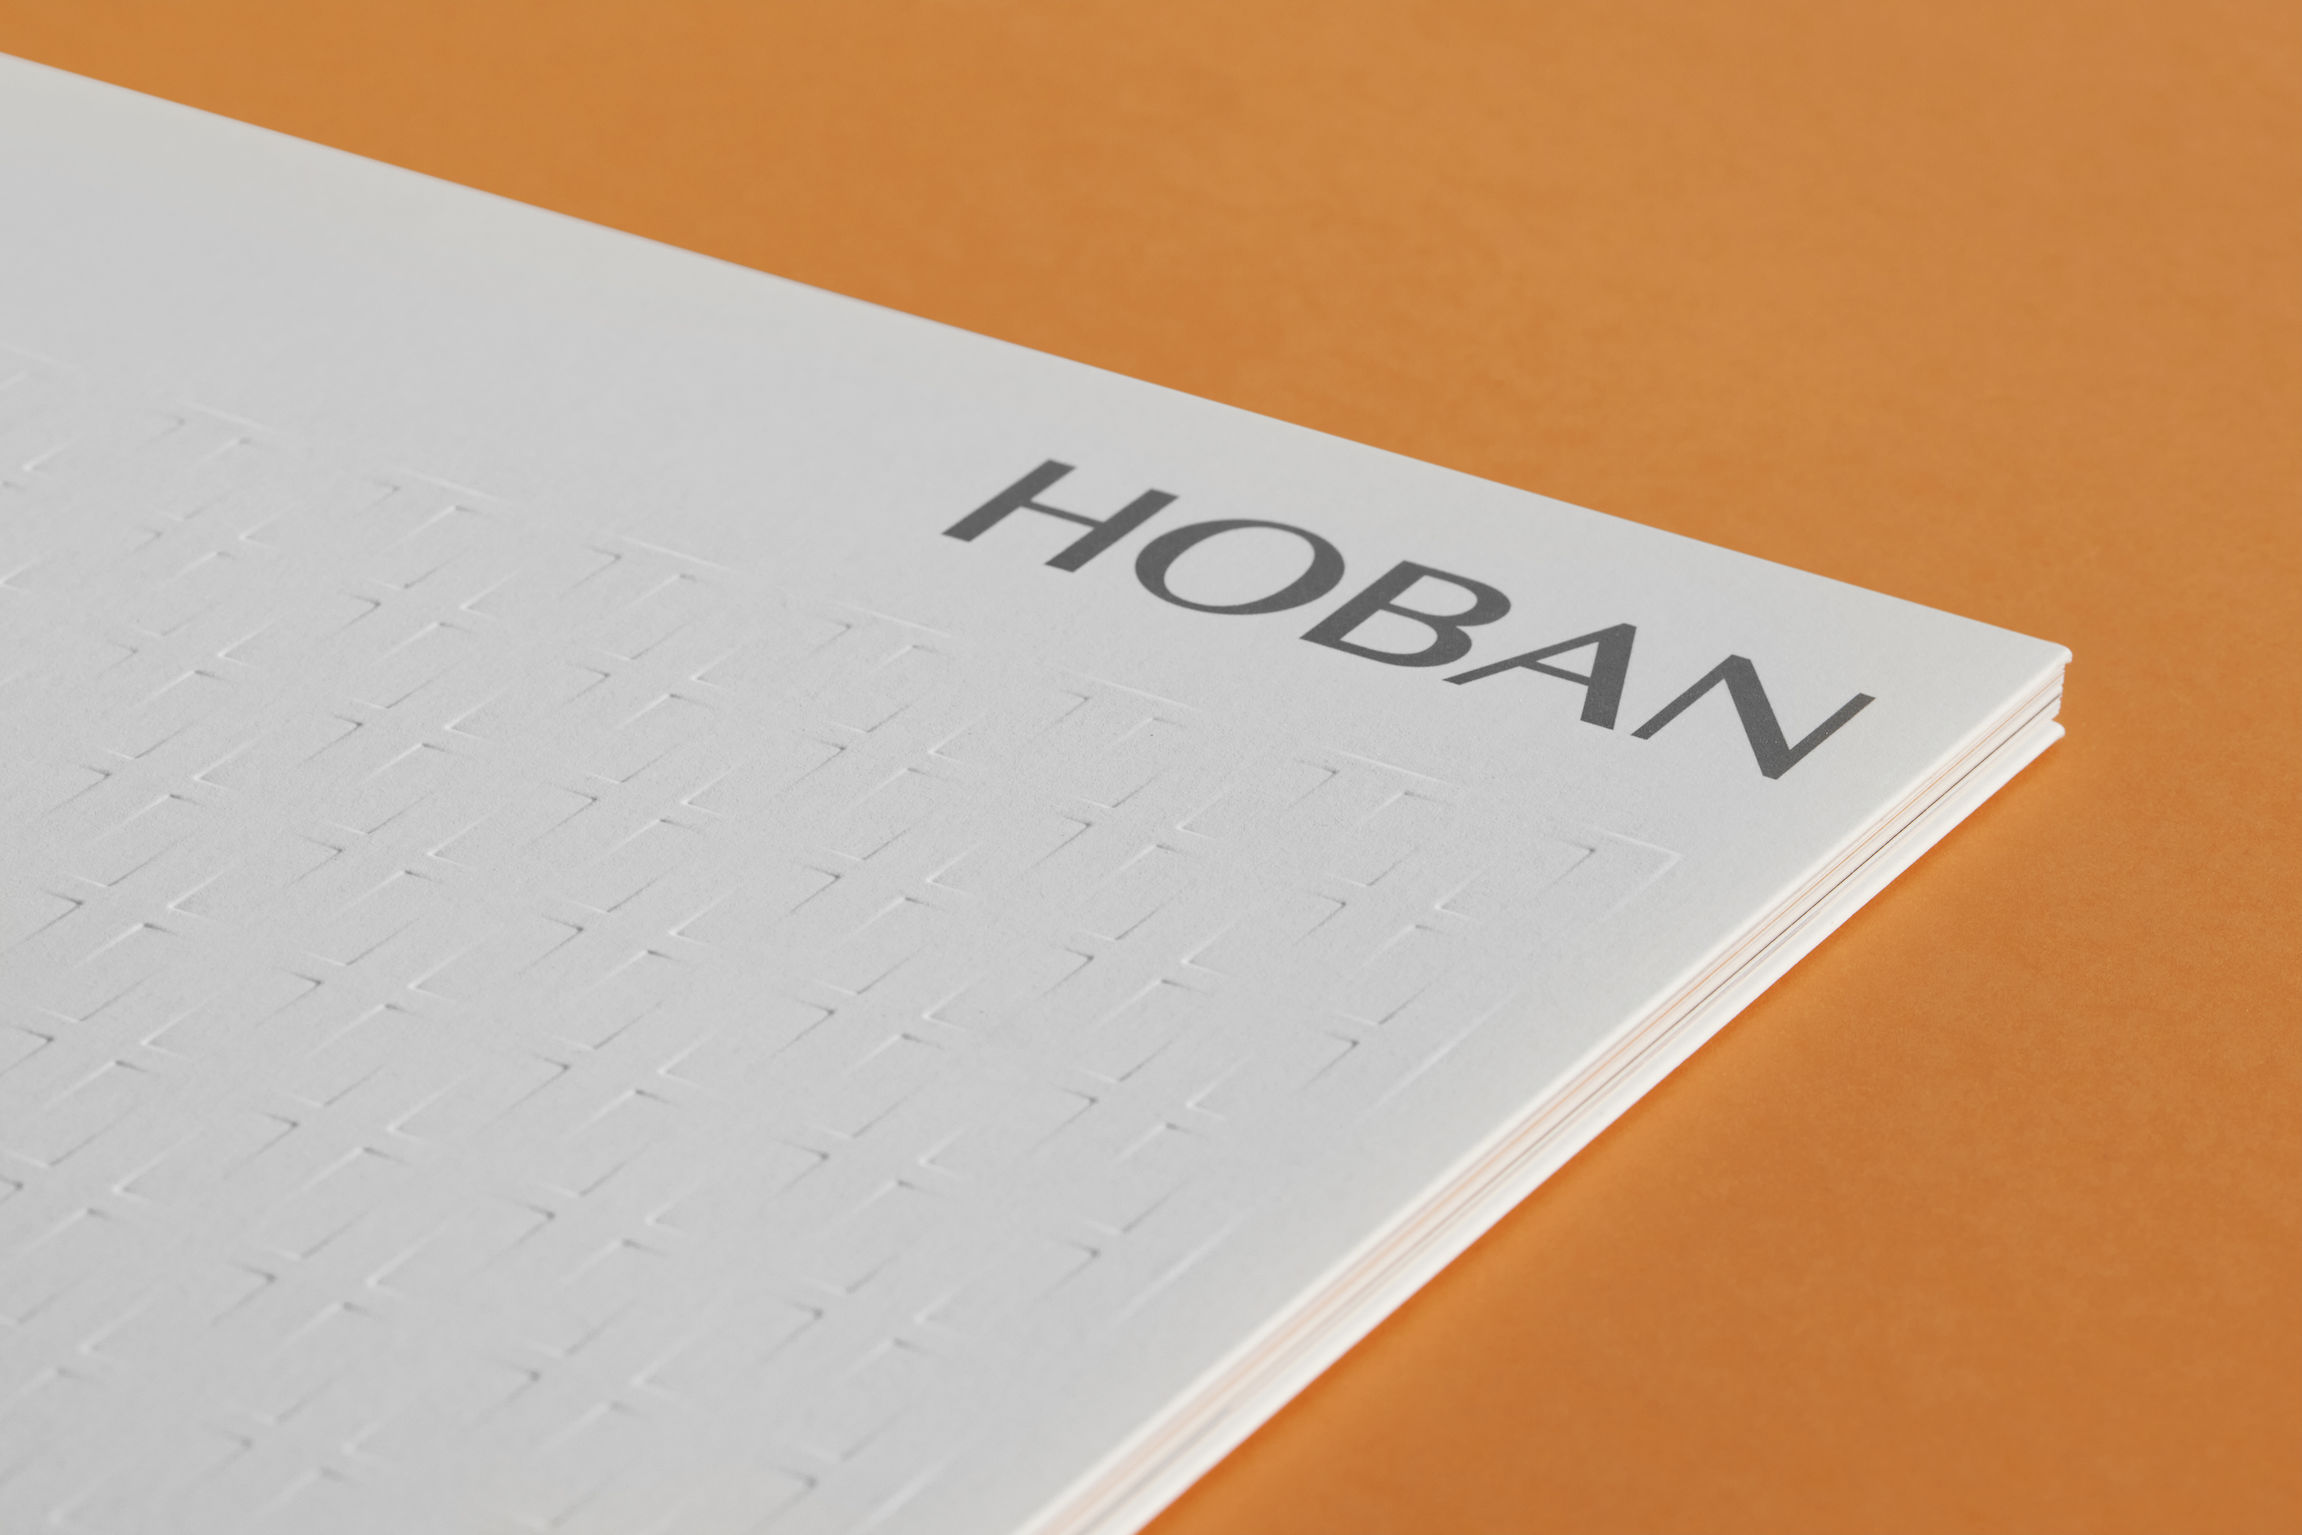 Hoban Group Brochure